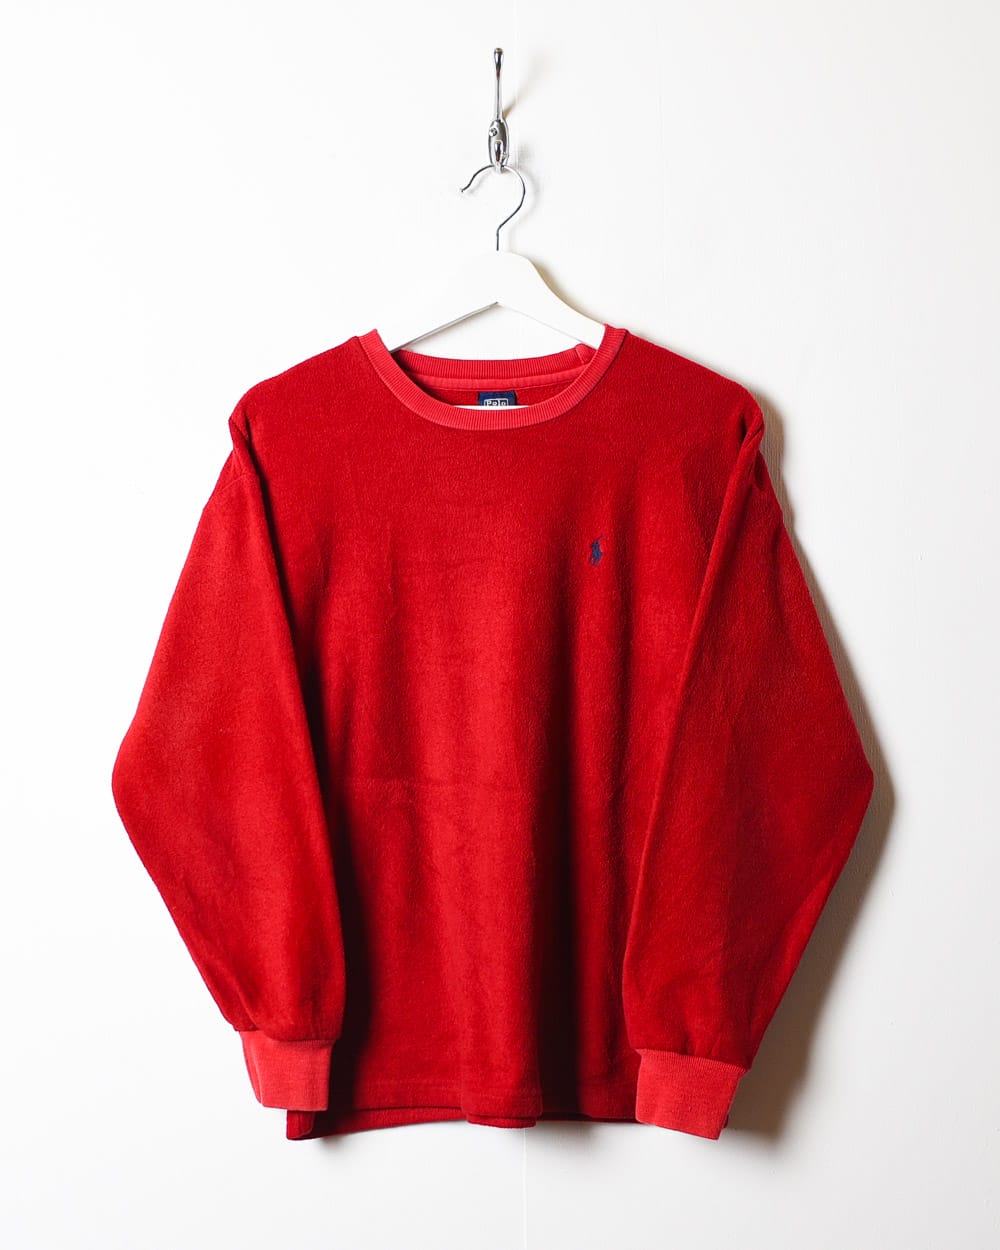 Red Polo Ralph Lauren Fleece Sweatshirt - Small